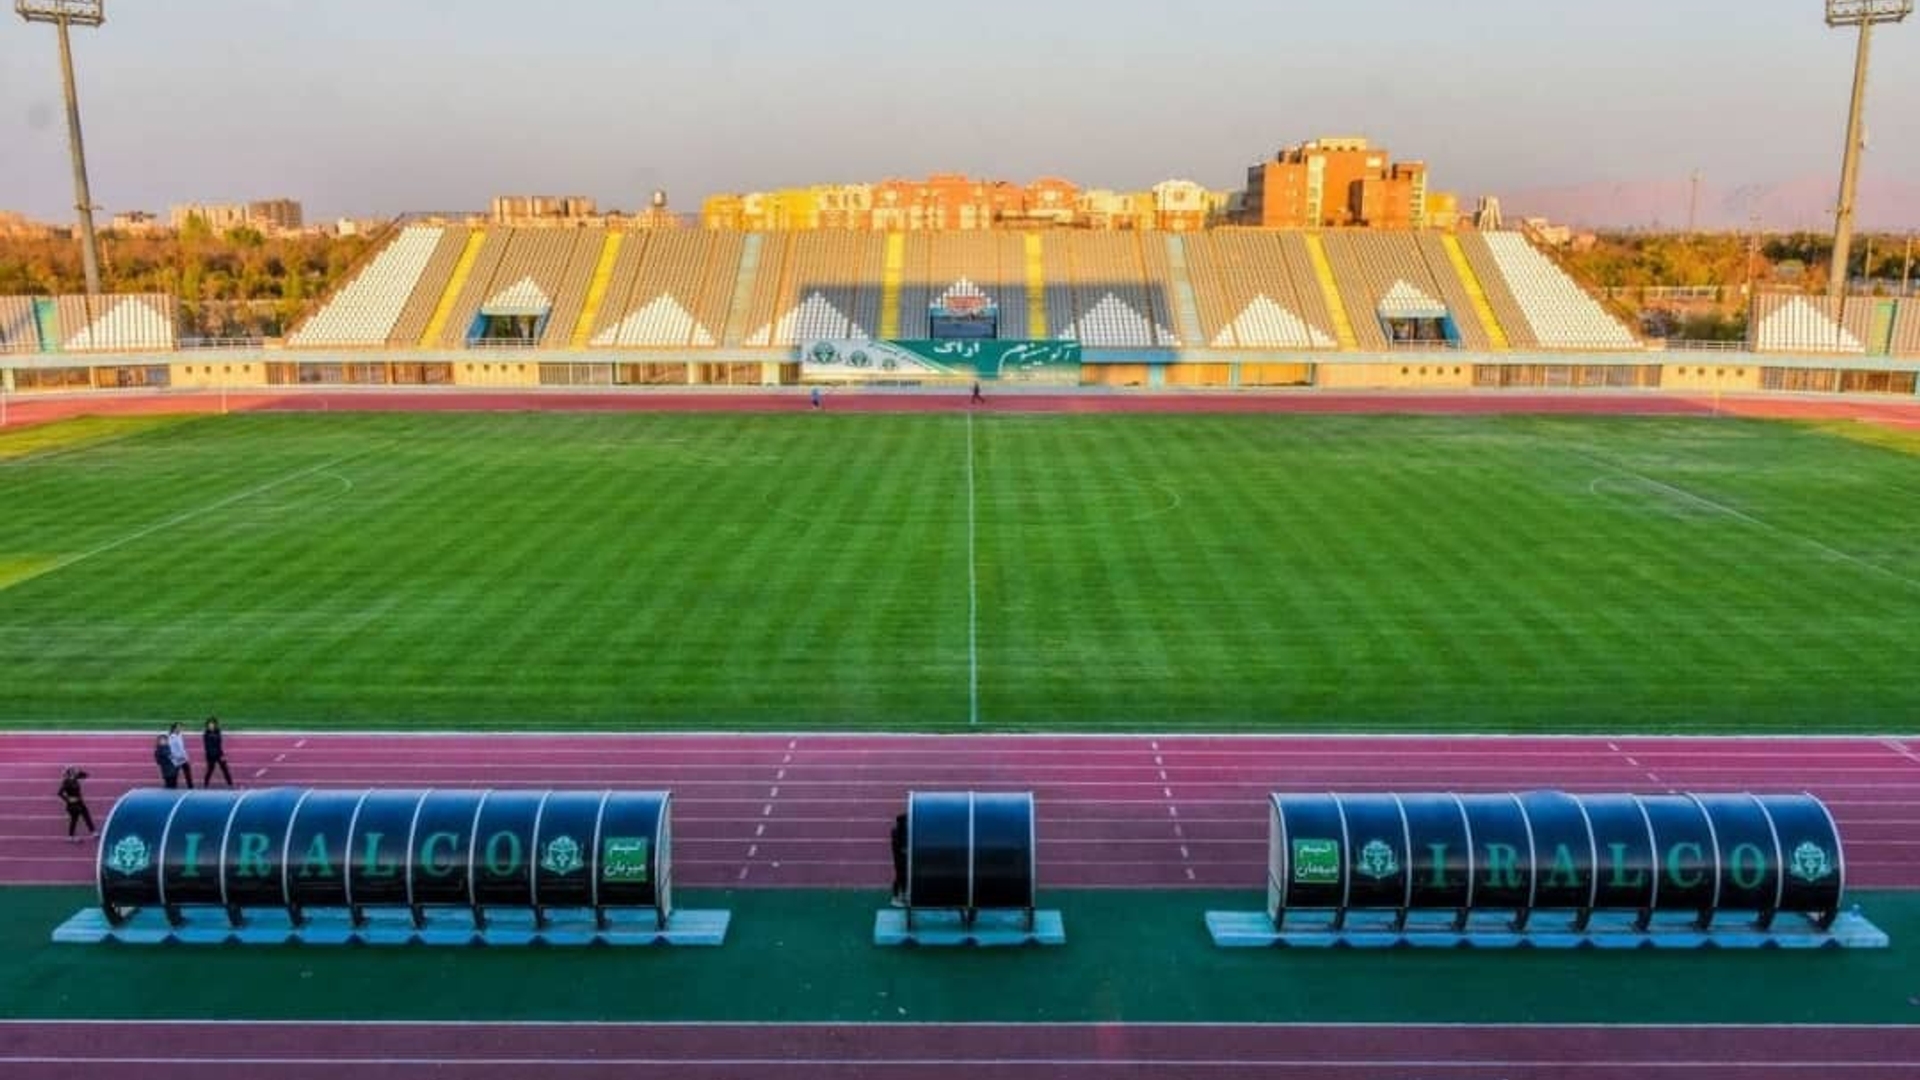 تمهیدات لازم برای برگزاری دیدار تیم های پرسپولیس - سپاهان اصفهان در اراک اندیشیده شده است